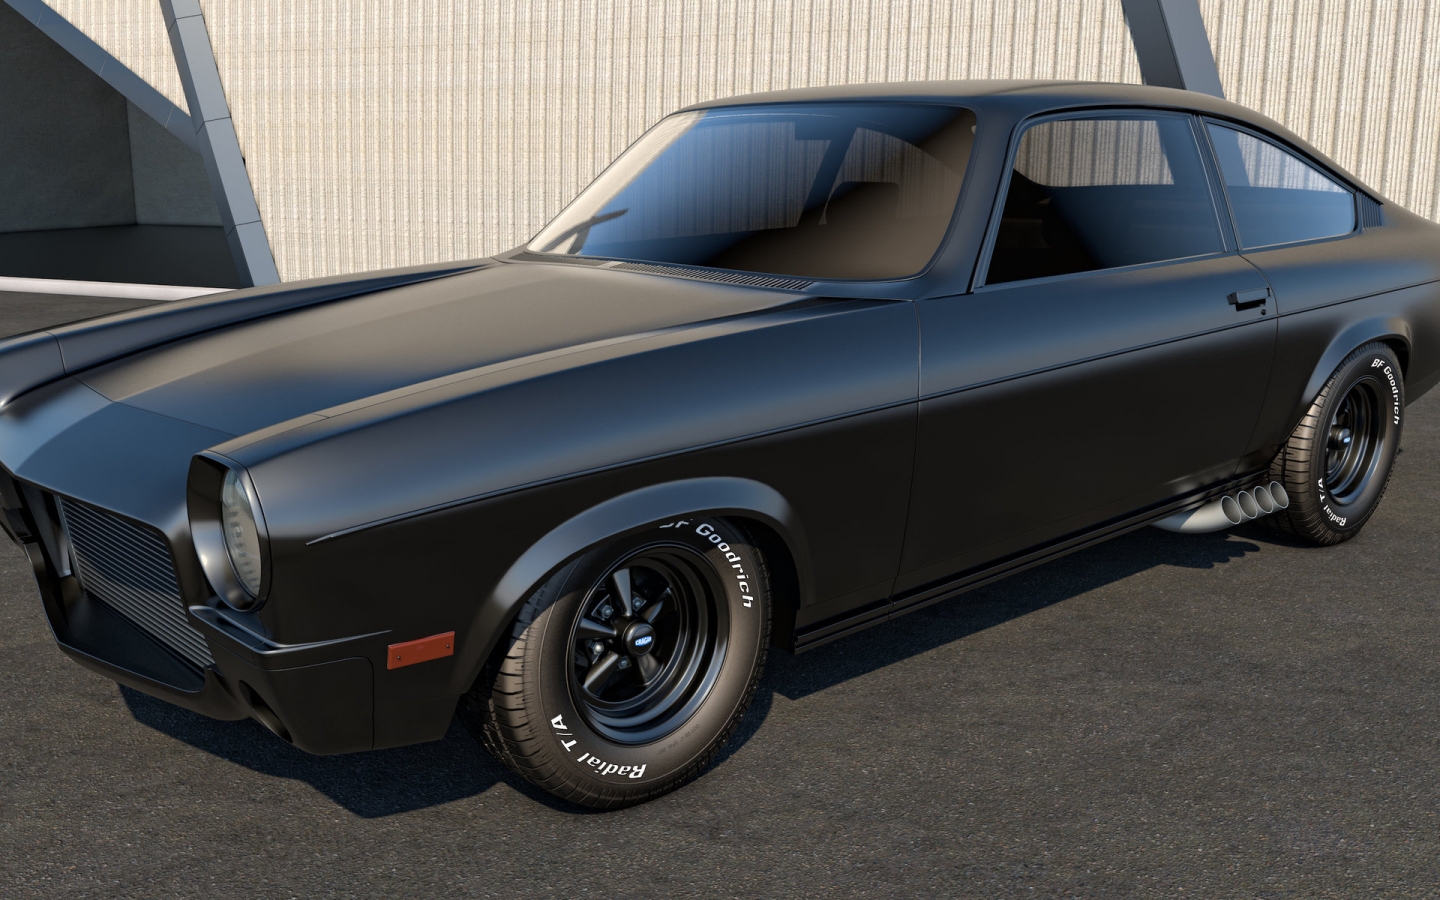 Black Chevrolet Vega for 1440 x 900 widescreen resolution